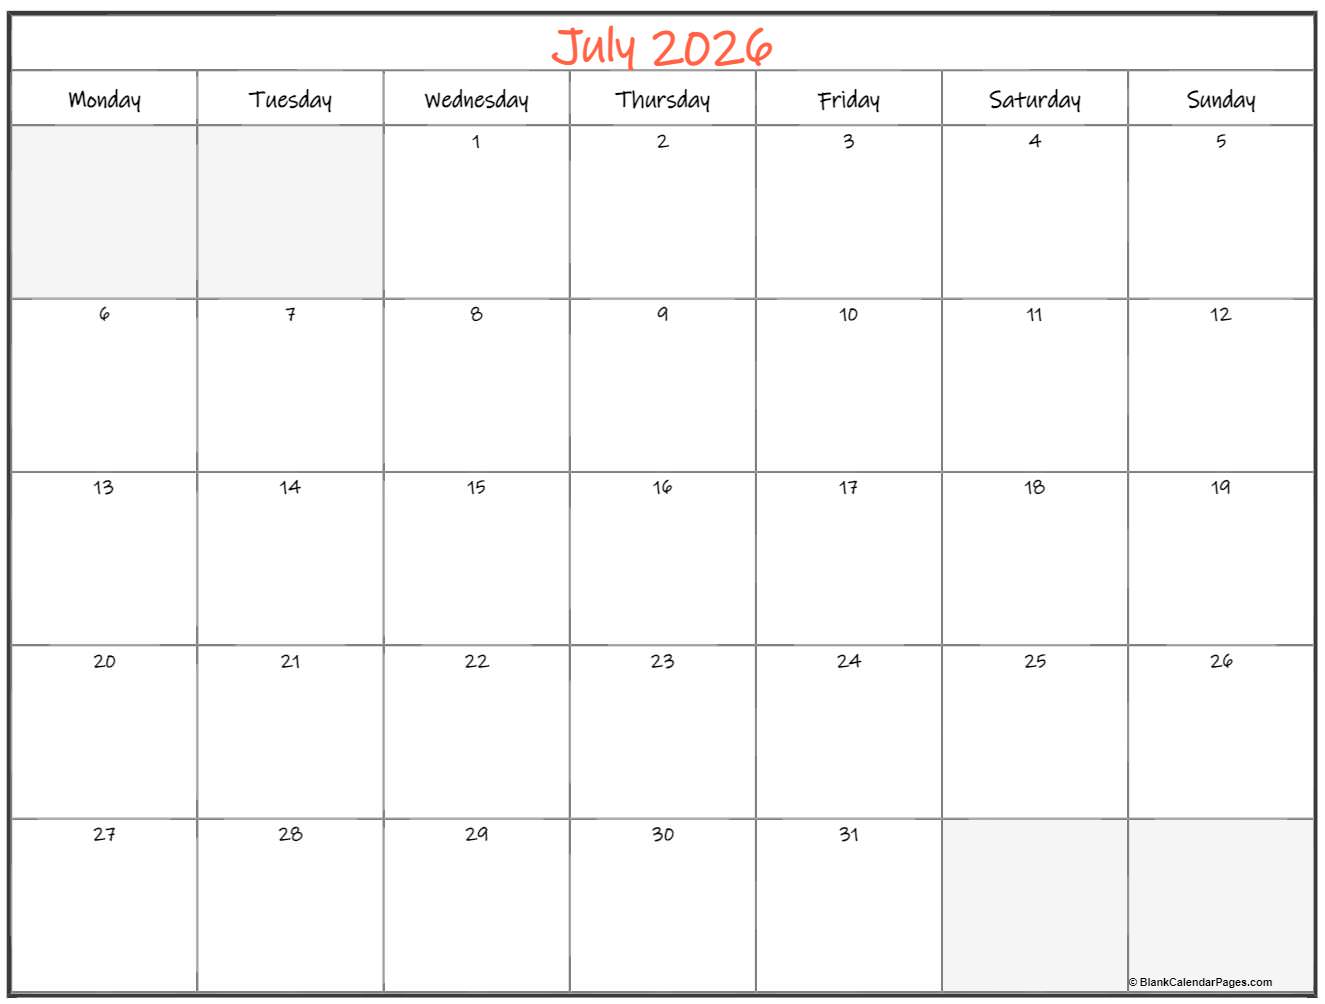 July 2026 Monday calendar. Monday to Sunday